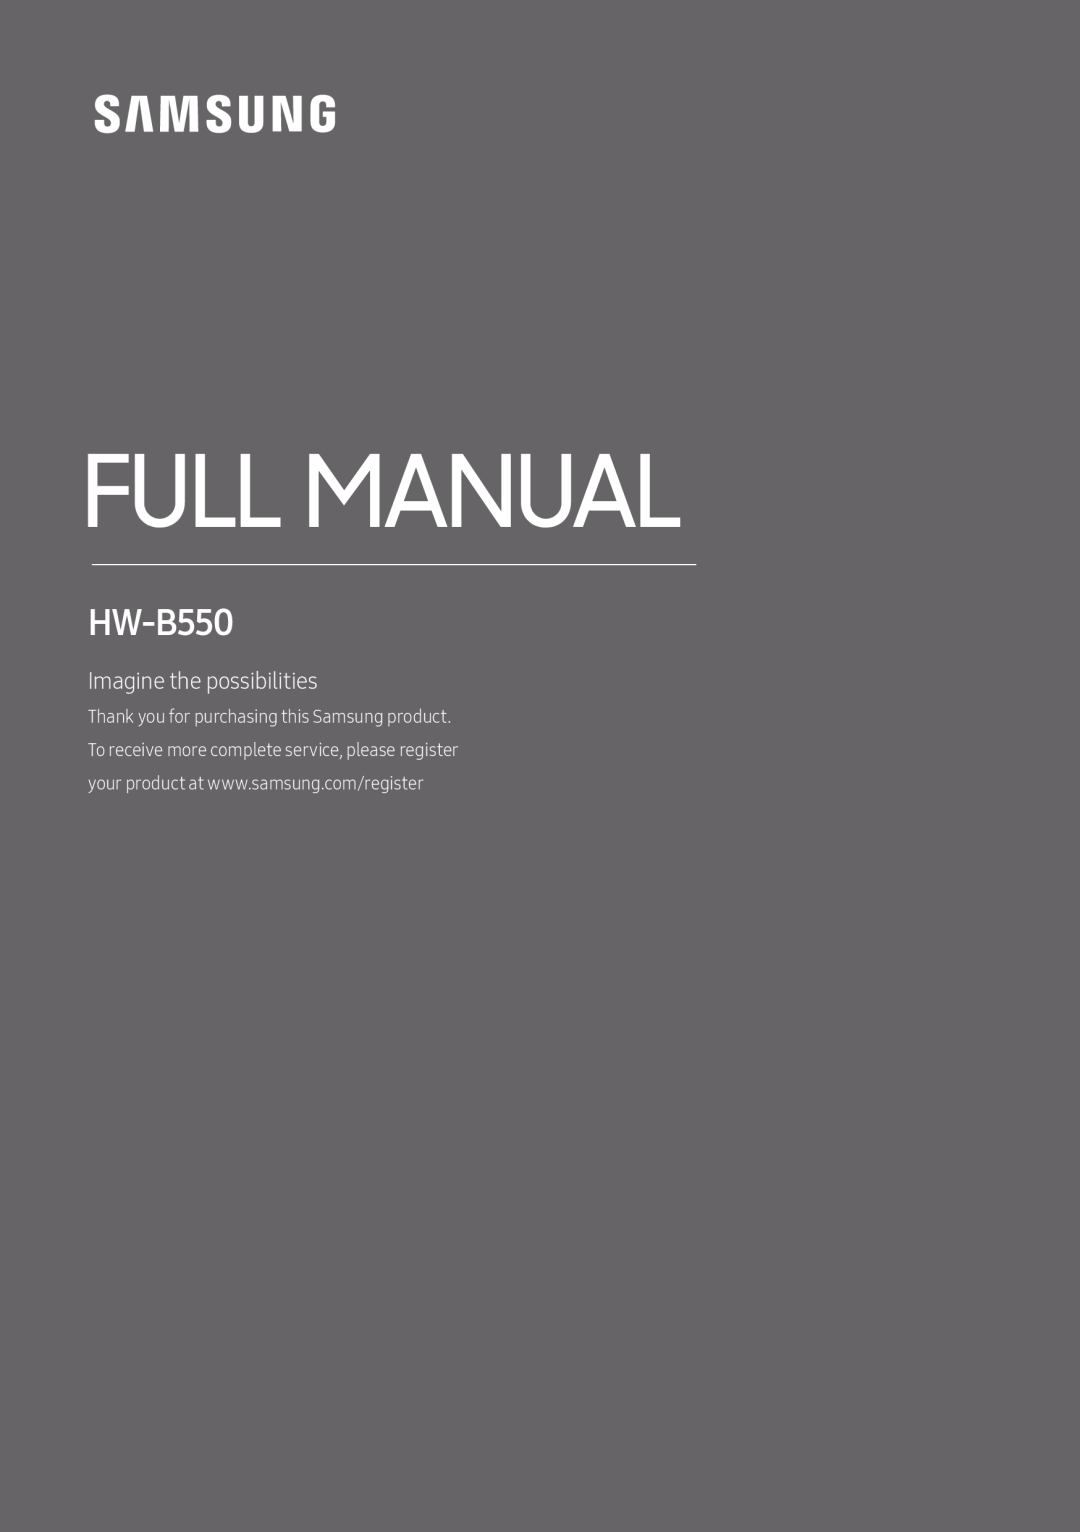 Standard HW-B550 HW-B550/ZA